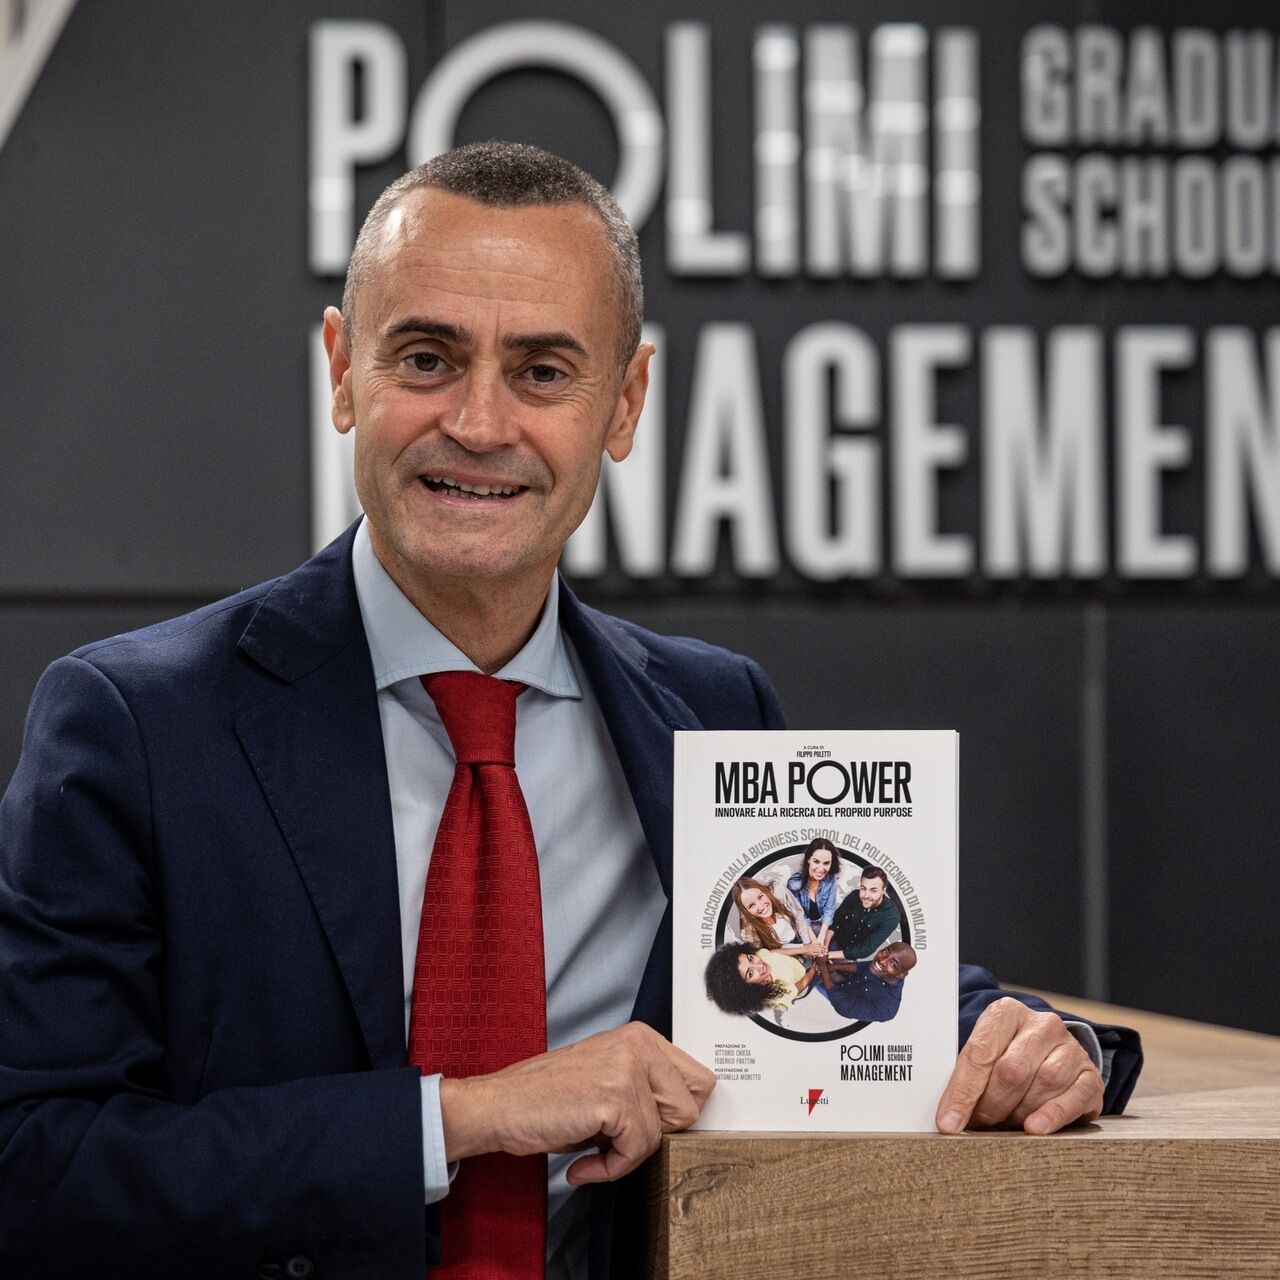 MBA Power: професионалният журналист Филипо Полети е автор на книгата „MBA Power: innovating in search of one's goal“: той разказва историите на 101 мениджъри на възраст между тридесет и шестдесет години, които са се върнали да учат и да учат по време на пандемията